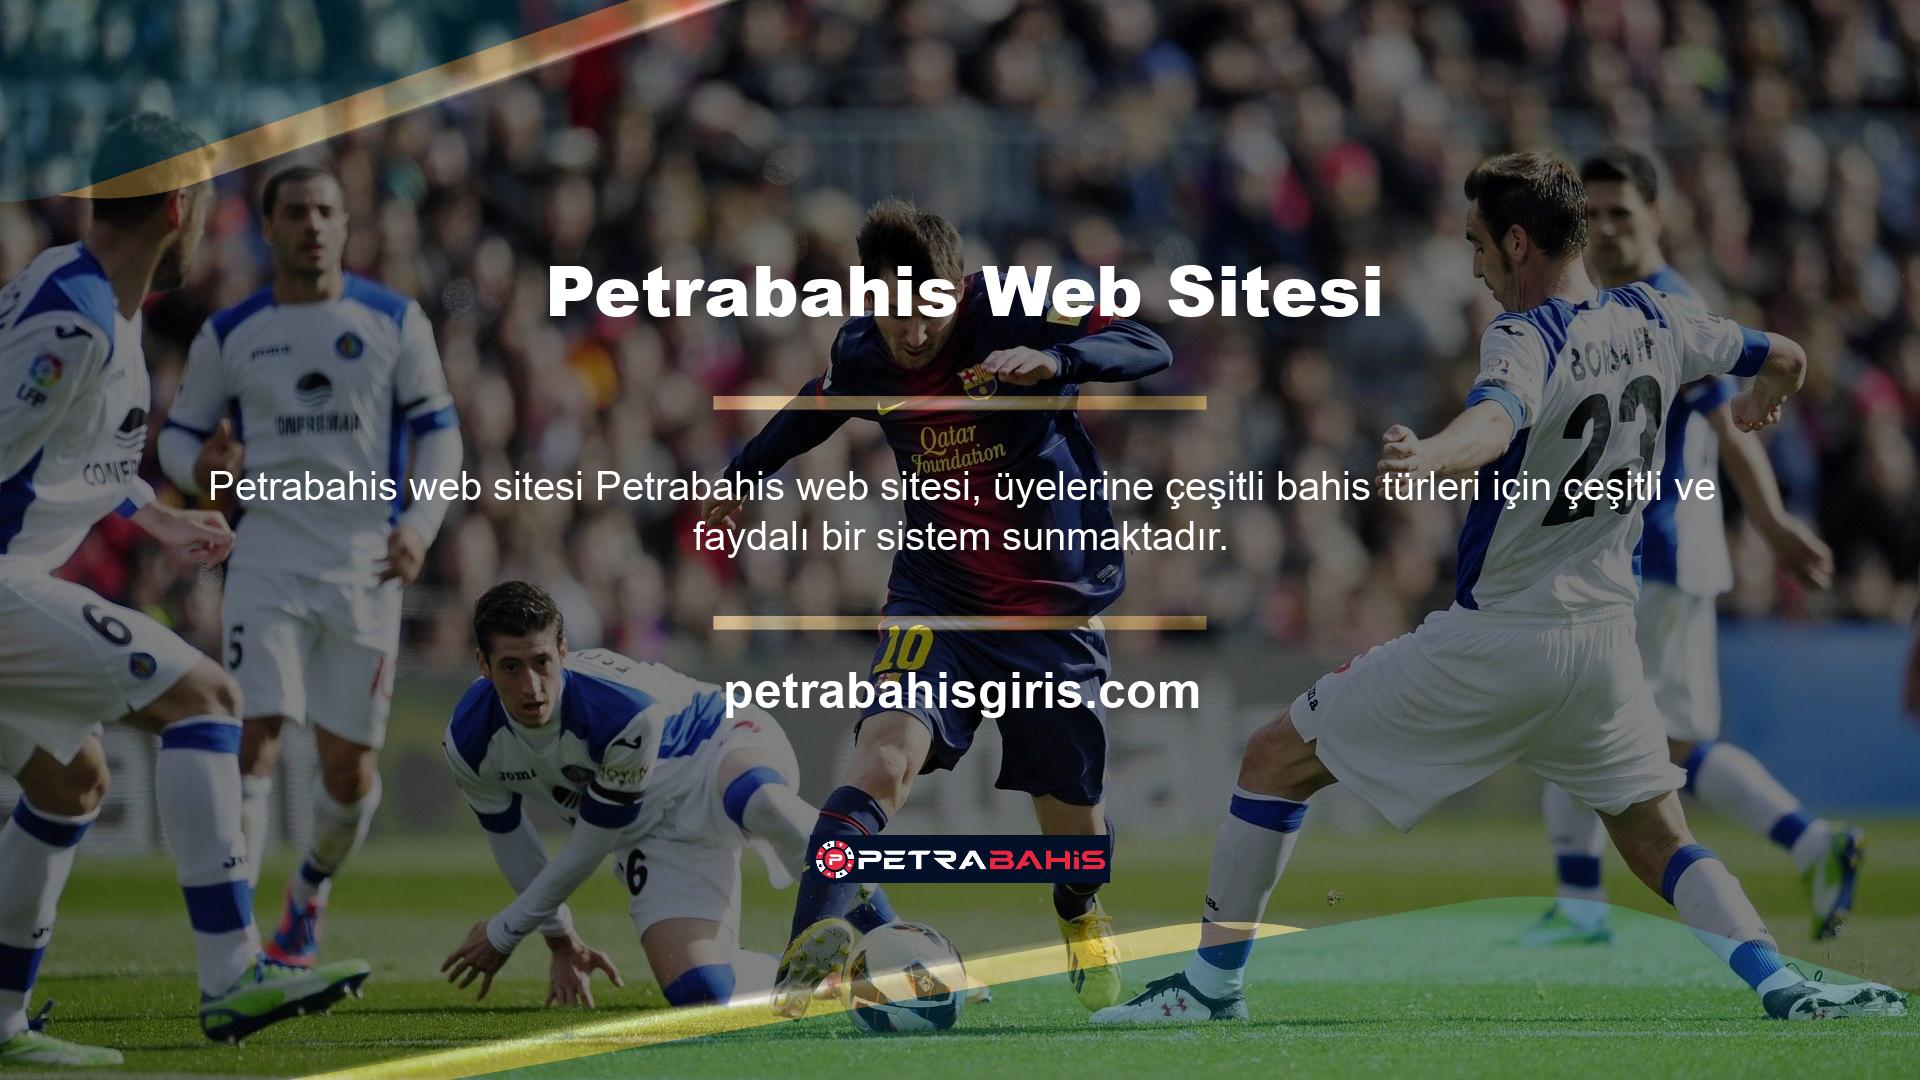 Petrabahis web sitesi, üyelerine günlük olarak güncellenen bahis fırsatları listesini sunmaktadır